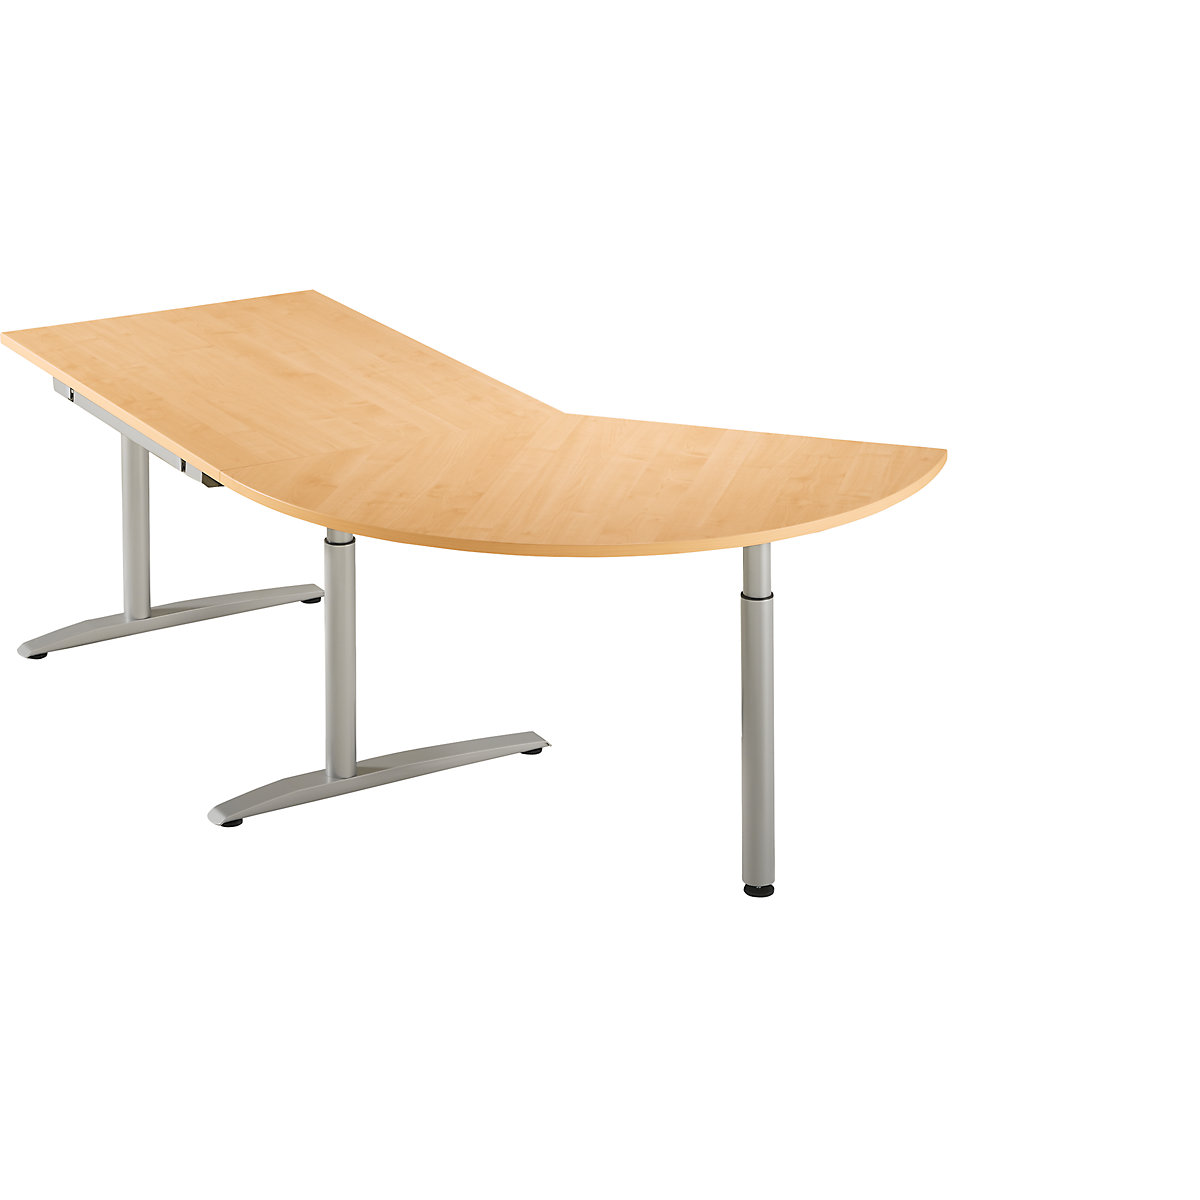 HANNA Table d'extension réglable en hauteur de 650 à 850 mm, 3/8 de cercle, avec pied stabilisateur, façon hêtre